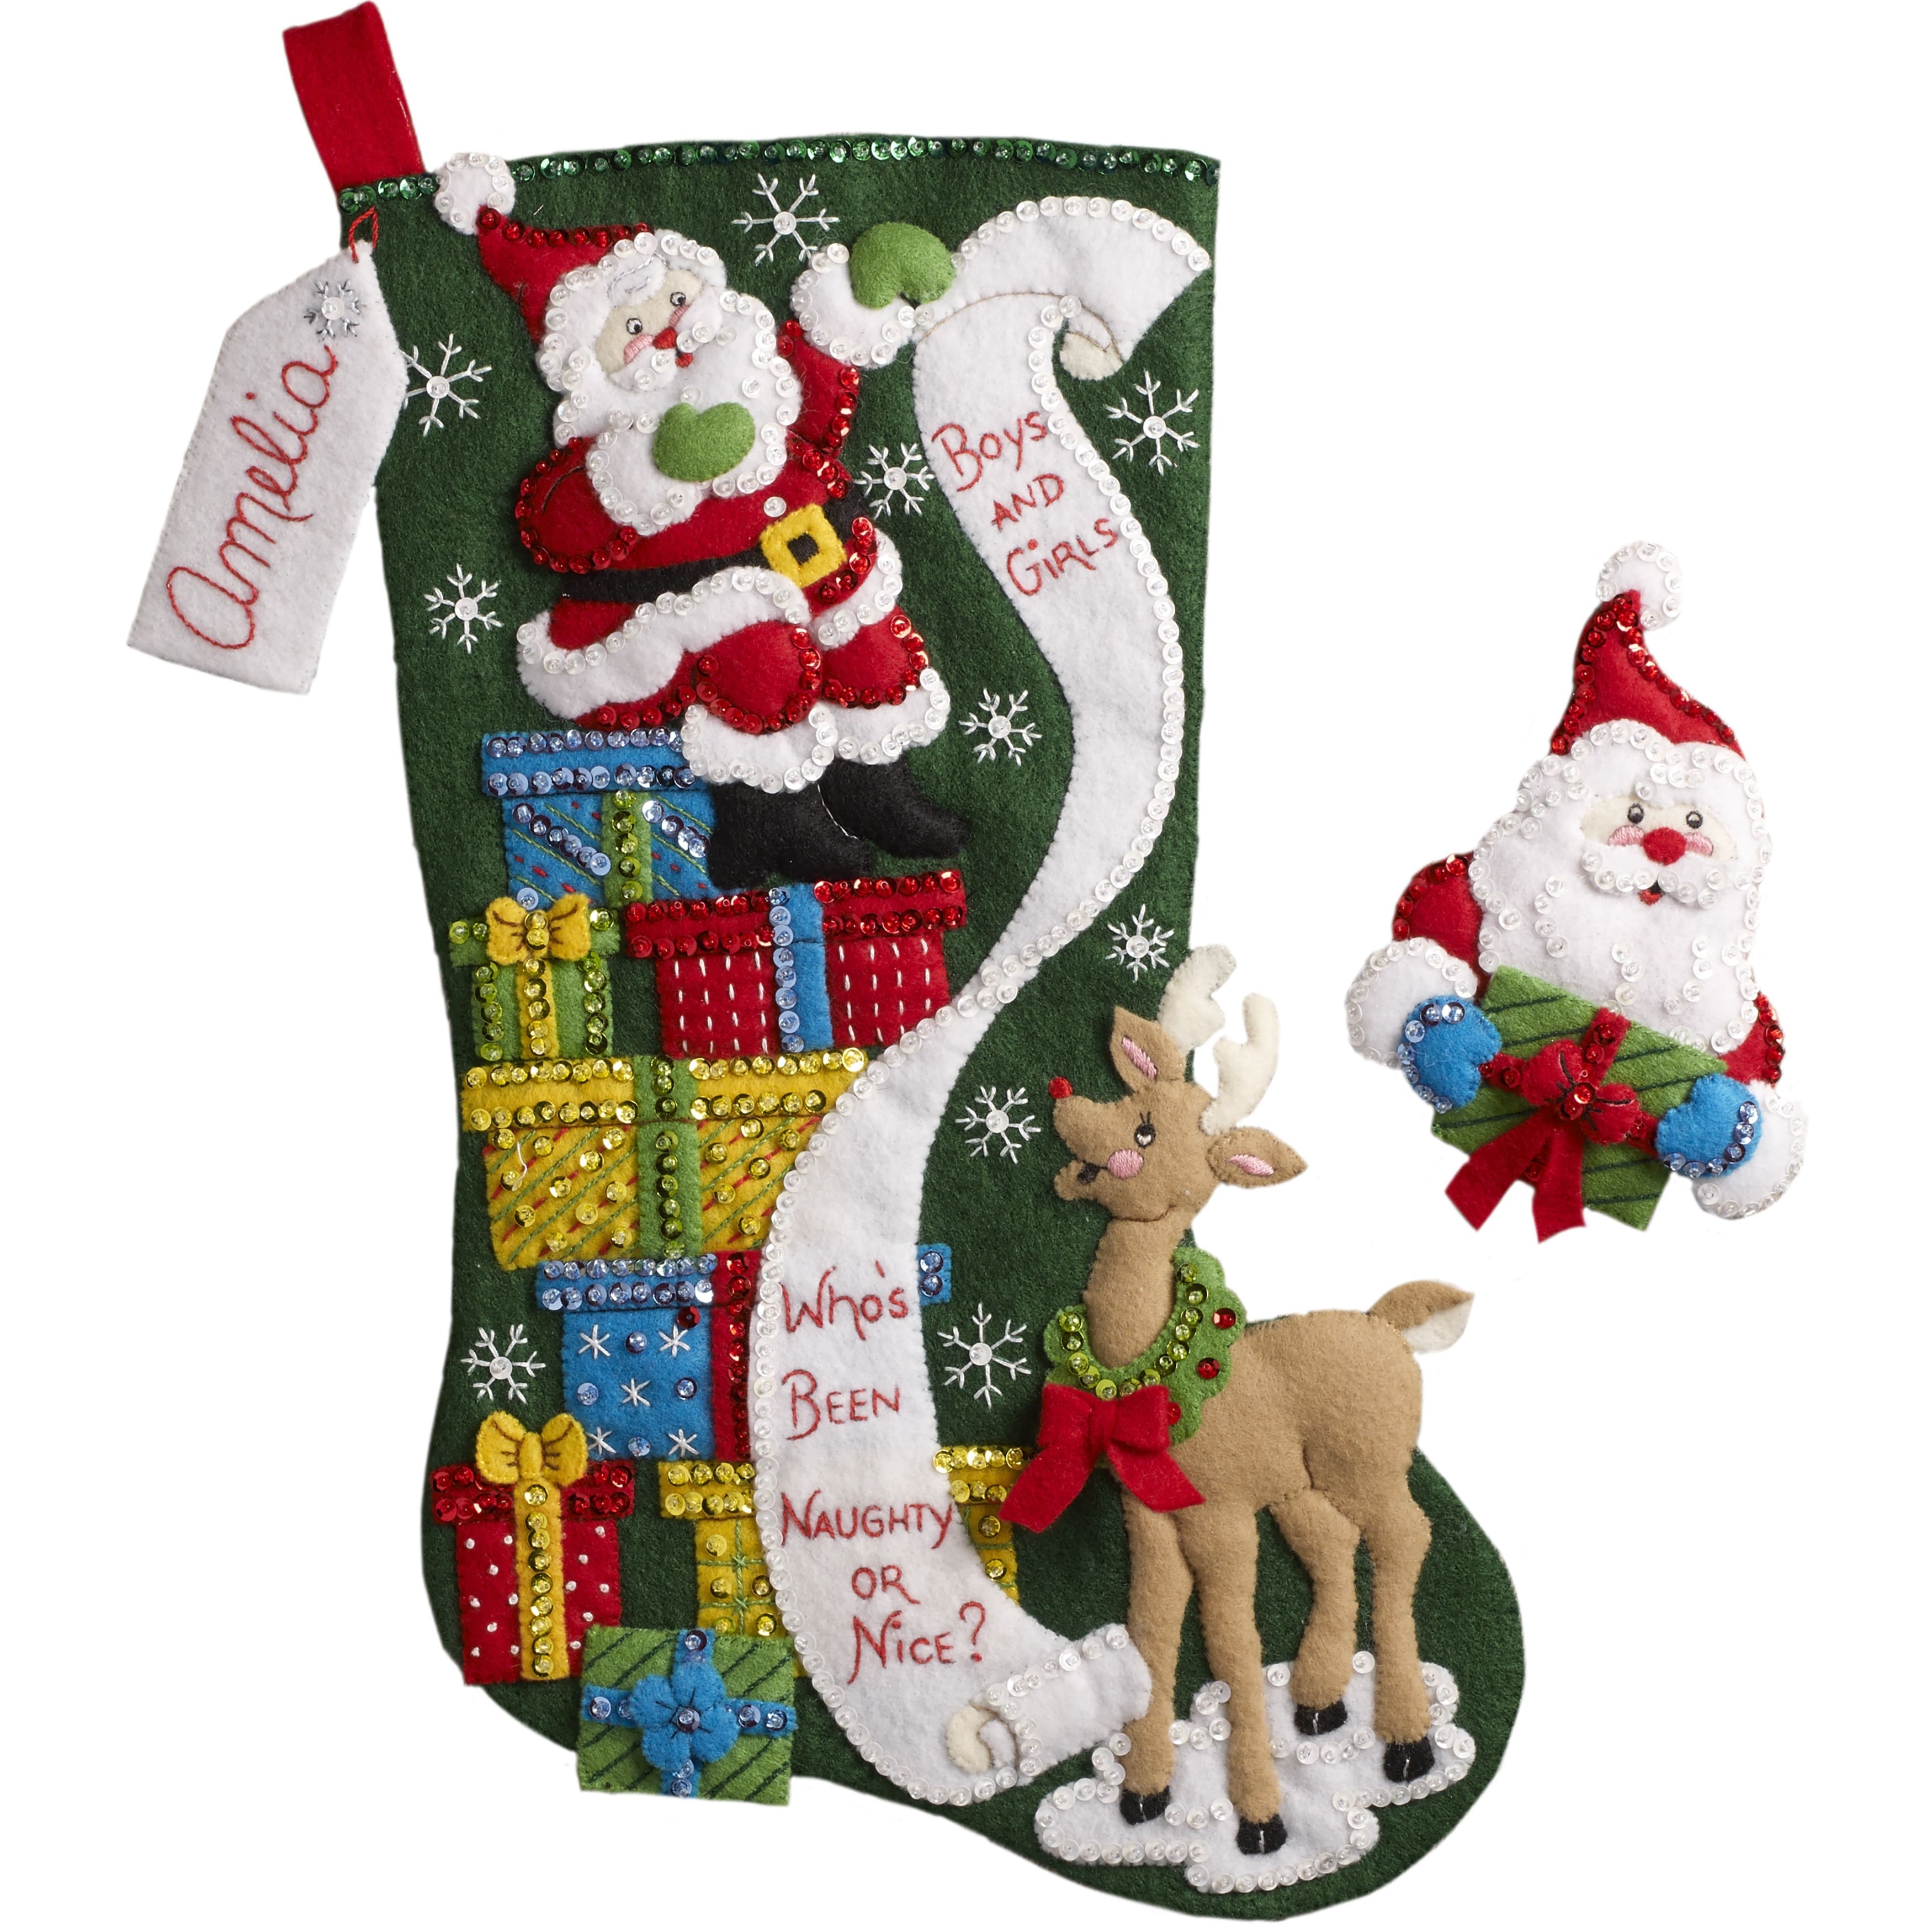  Christmas Stocking Kits